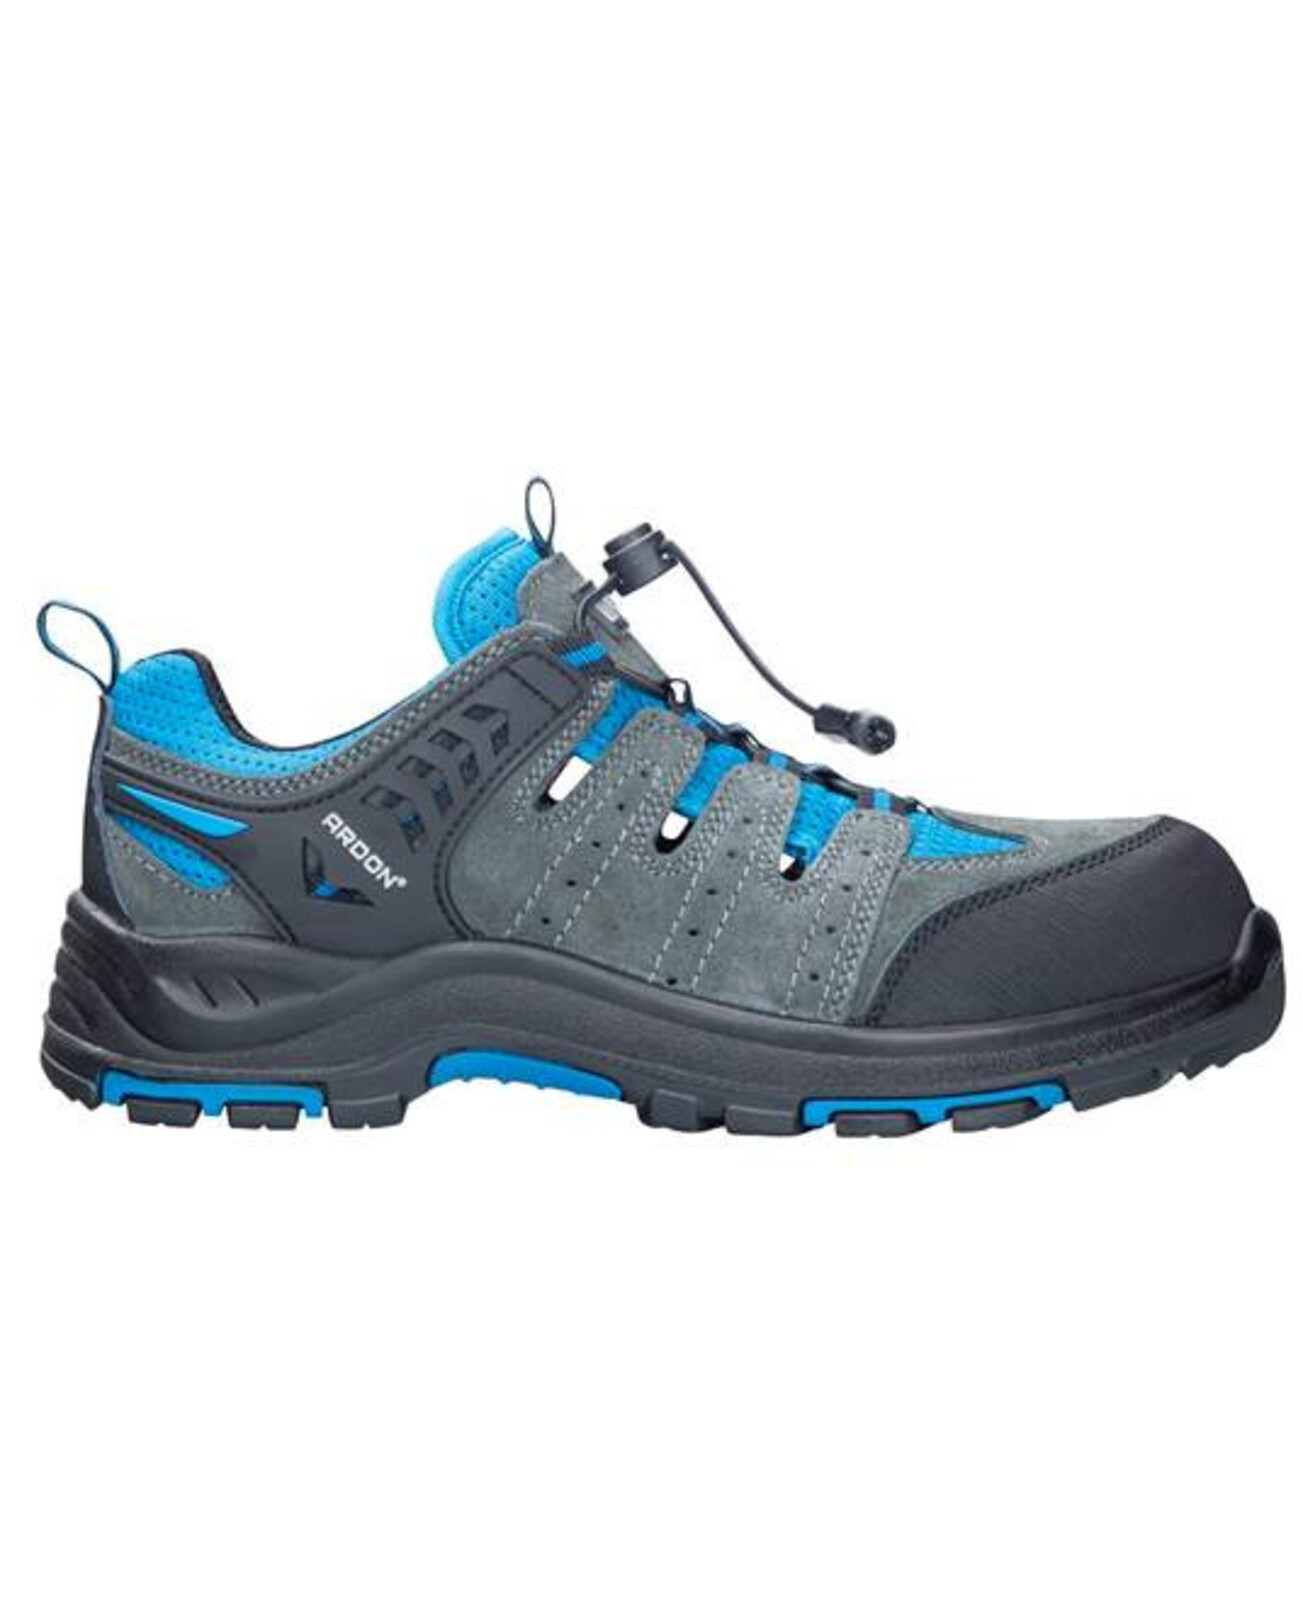 Bezpečnostná obuv ARDON®TRIMMER S1P  - veľkosť: 39, farba: sivá/modrá